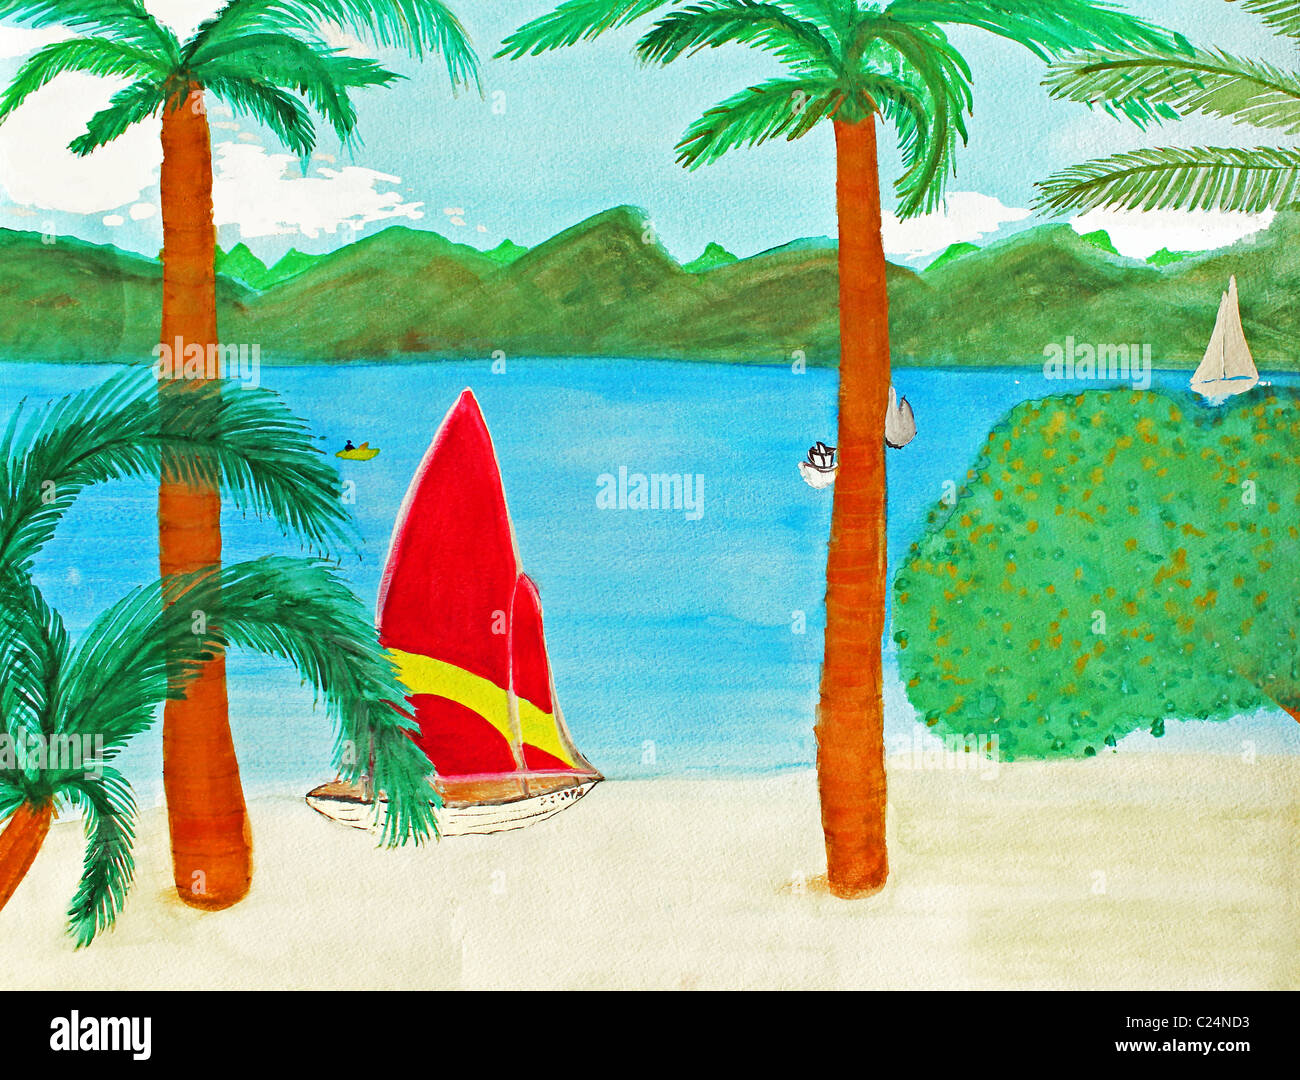 Un rouge et rayé jaune voilier est vu se détendre sur une plage de sable de l'Île Vierge tan dans ce lieu exotique. Peinture d'art d'une plage tropicale ensoleillée Banque D'Images